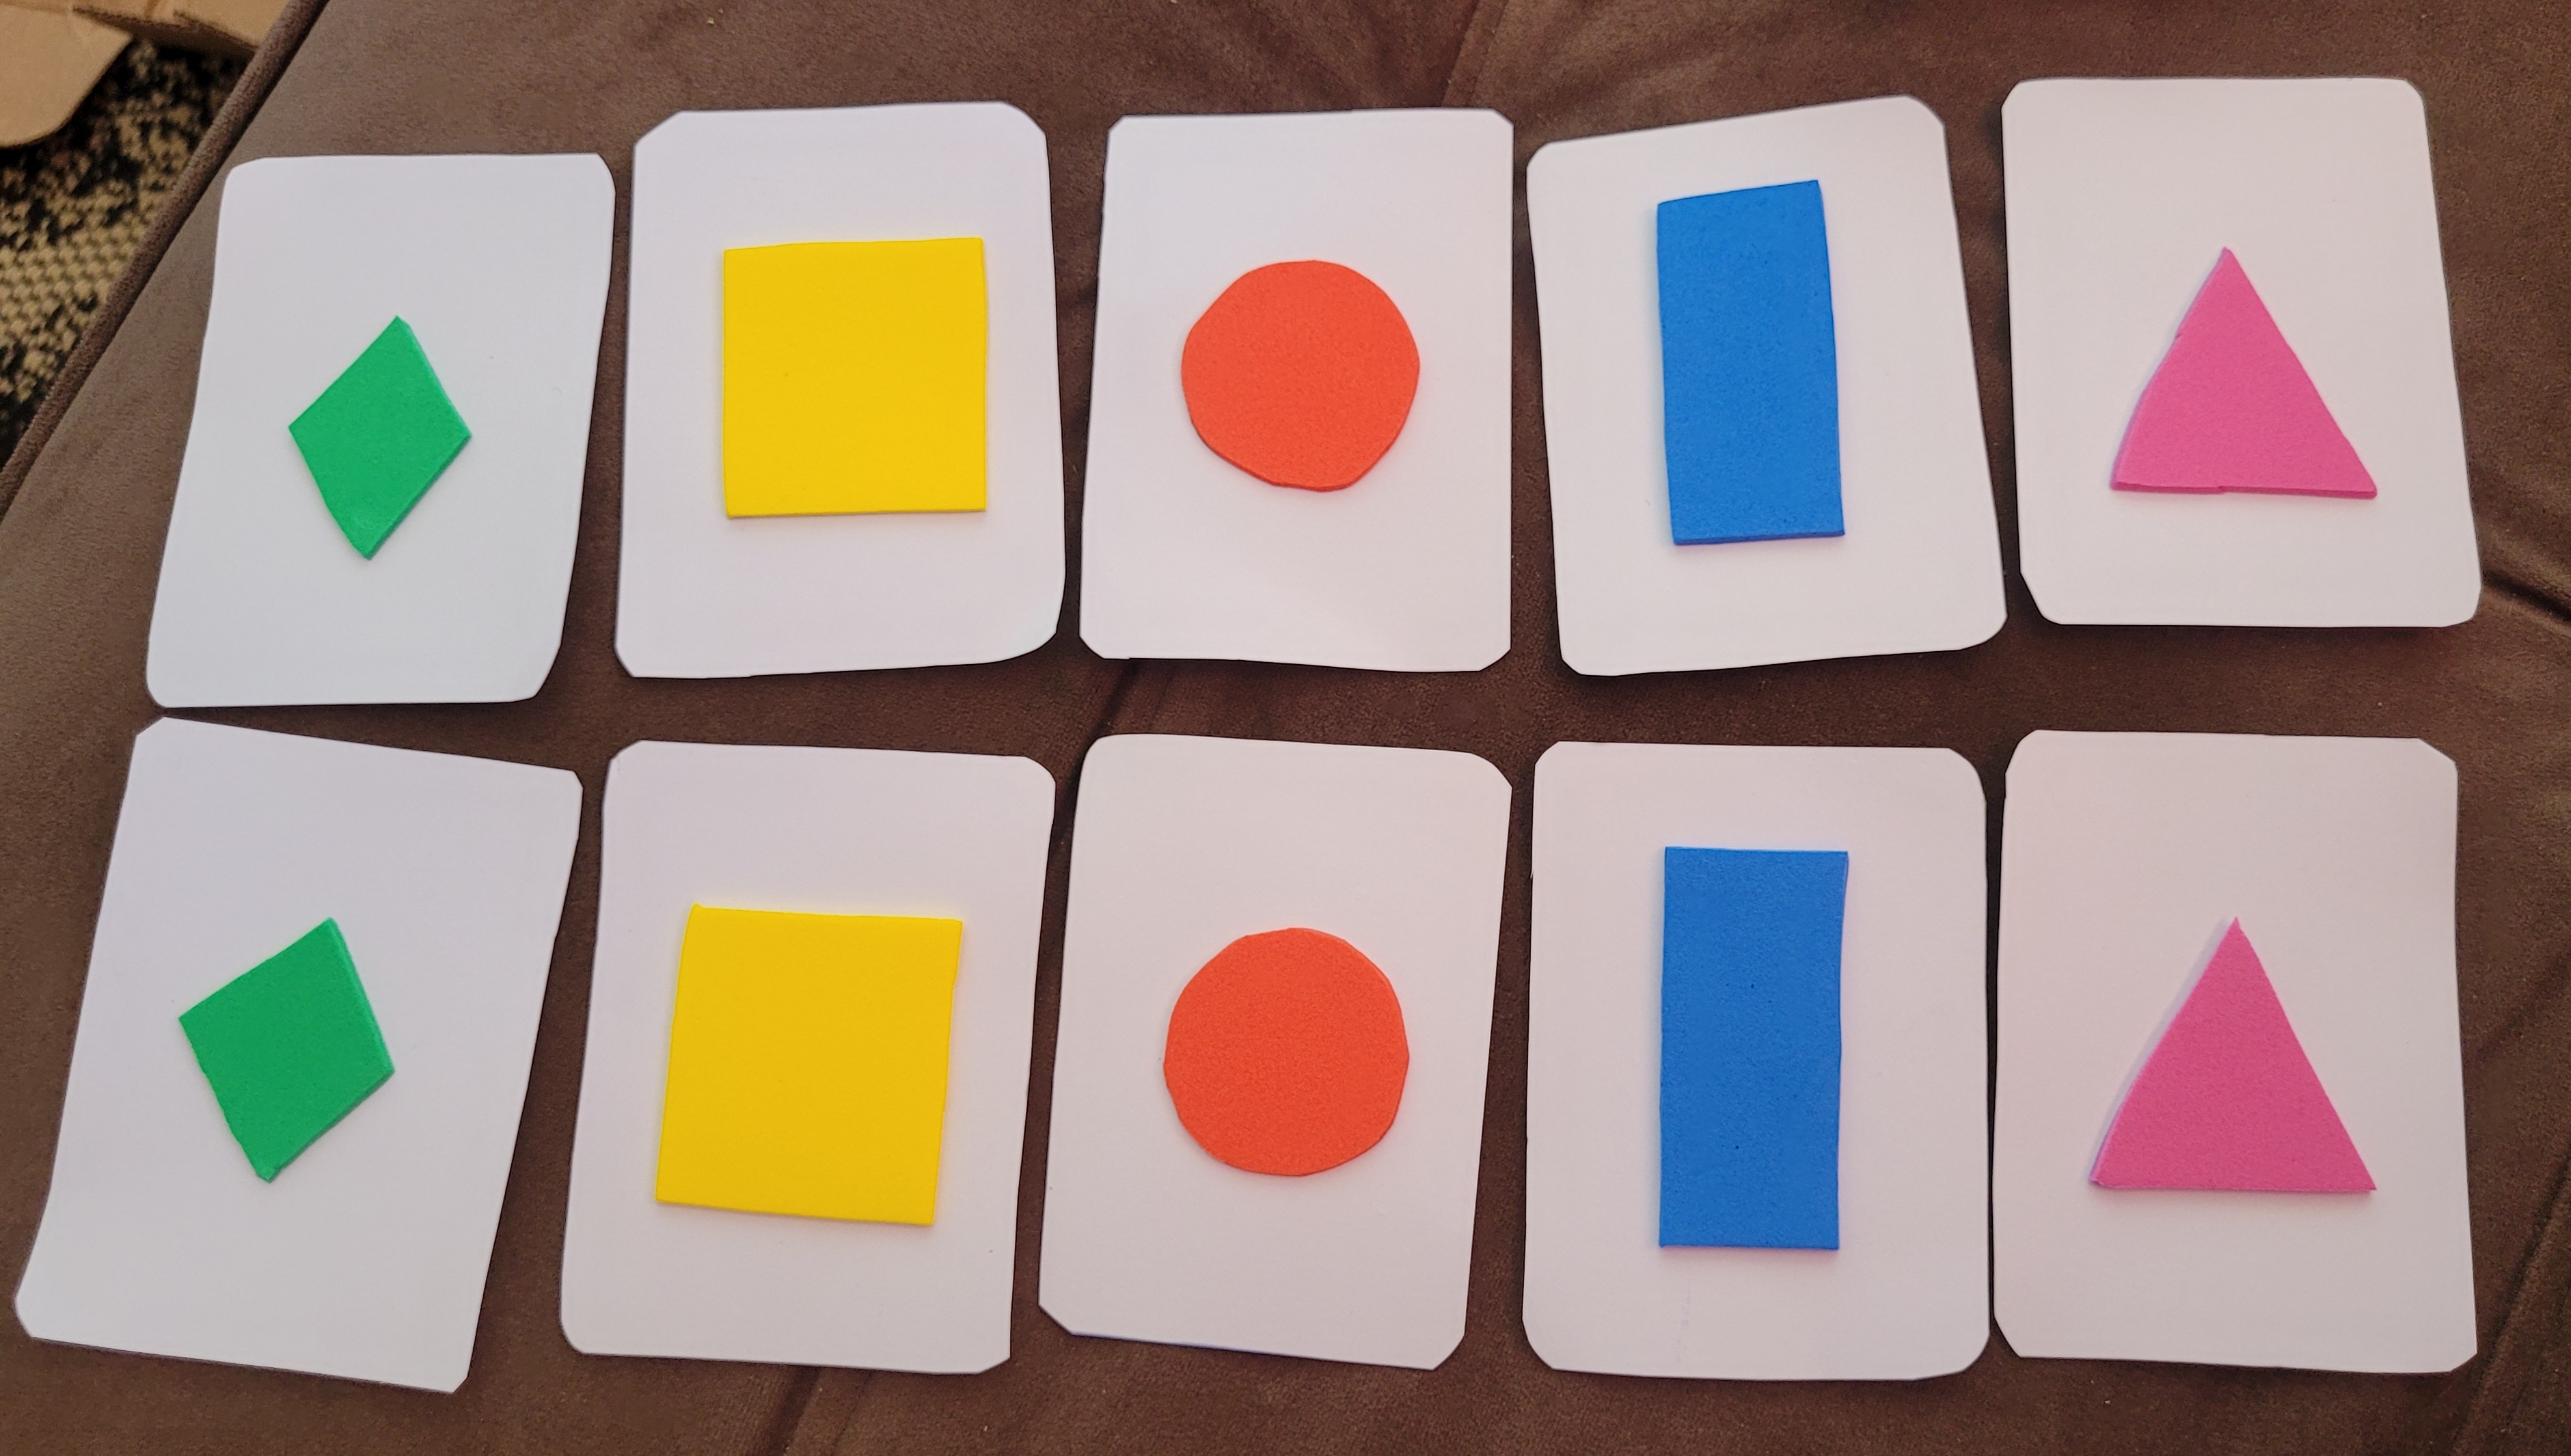 Formas geométricas do jogo da memória de cores diferentes, cartões